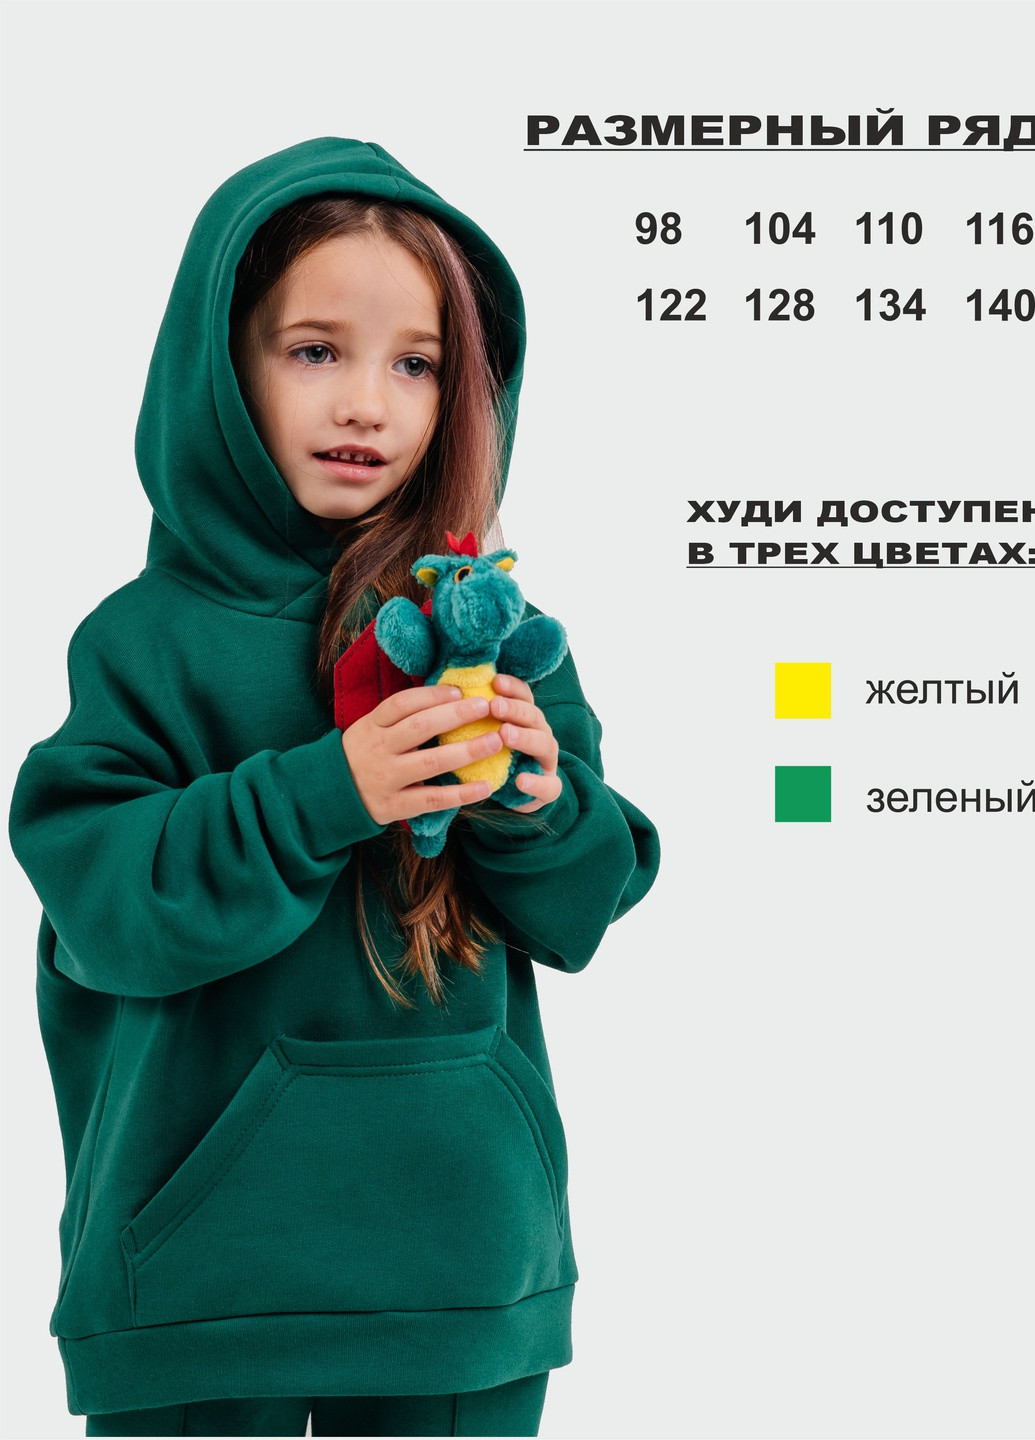 Зеленый демисезонный детский теплый спортивный костюм футер дино зеленый брючный Zabavka Детский теплый костюм футер Дино зеленый